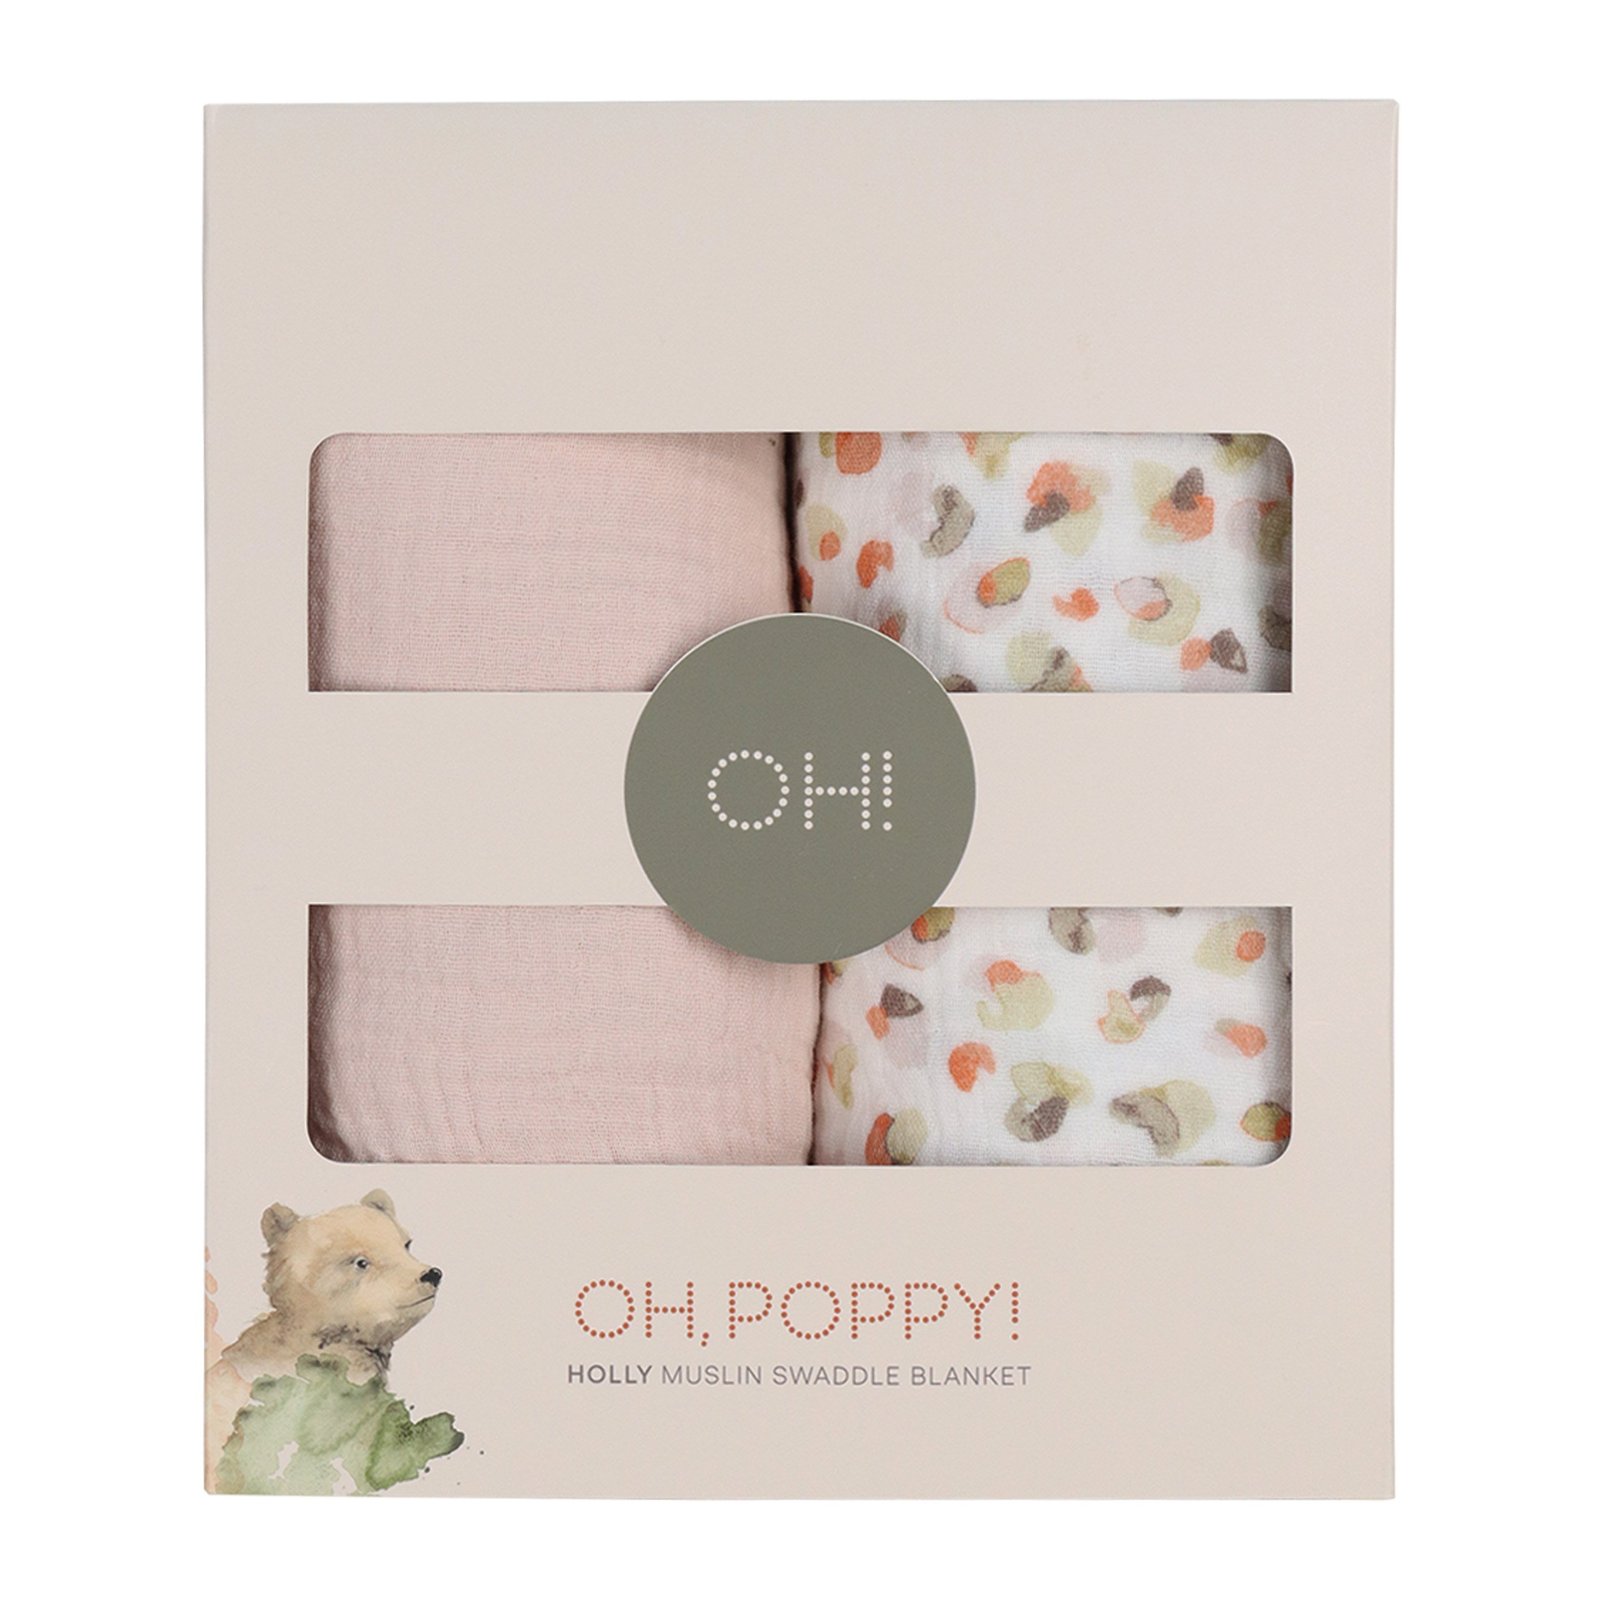 Oh, Poppy! Holly Muslin Swaddle Blanket Fresh Vanilla/Powder Pink 2 st